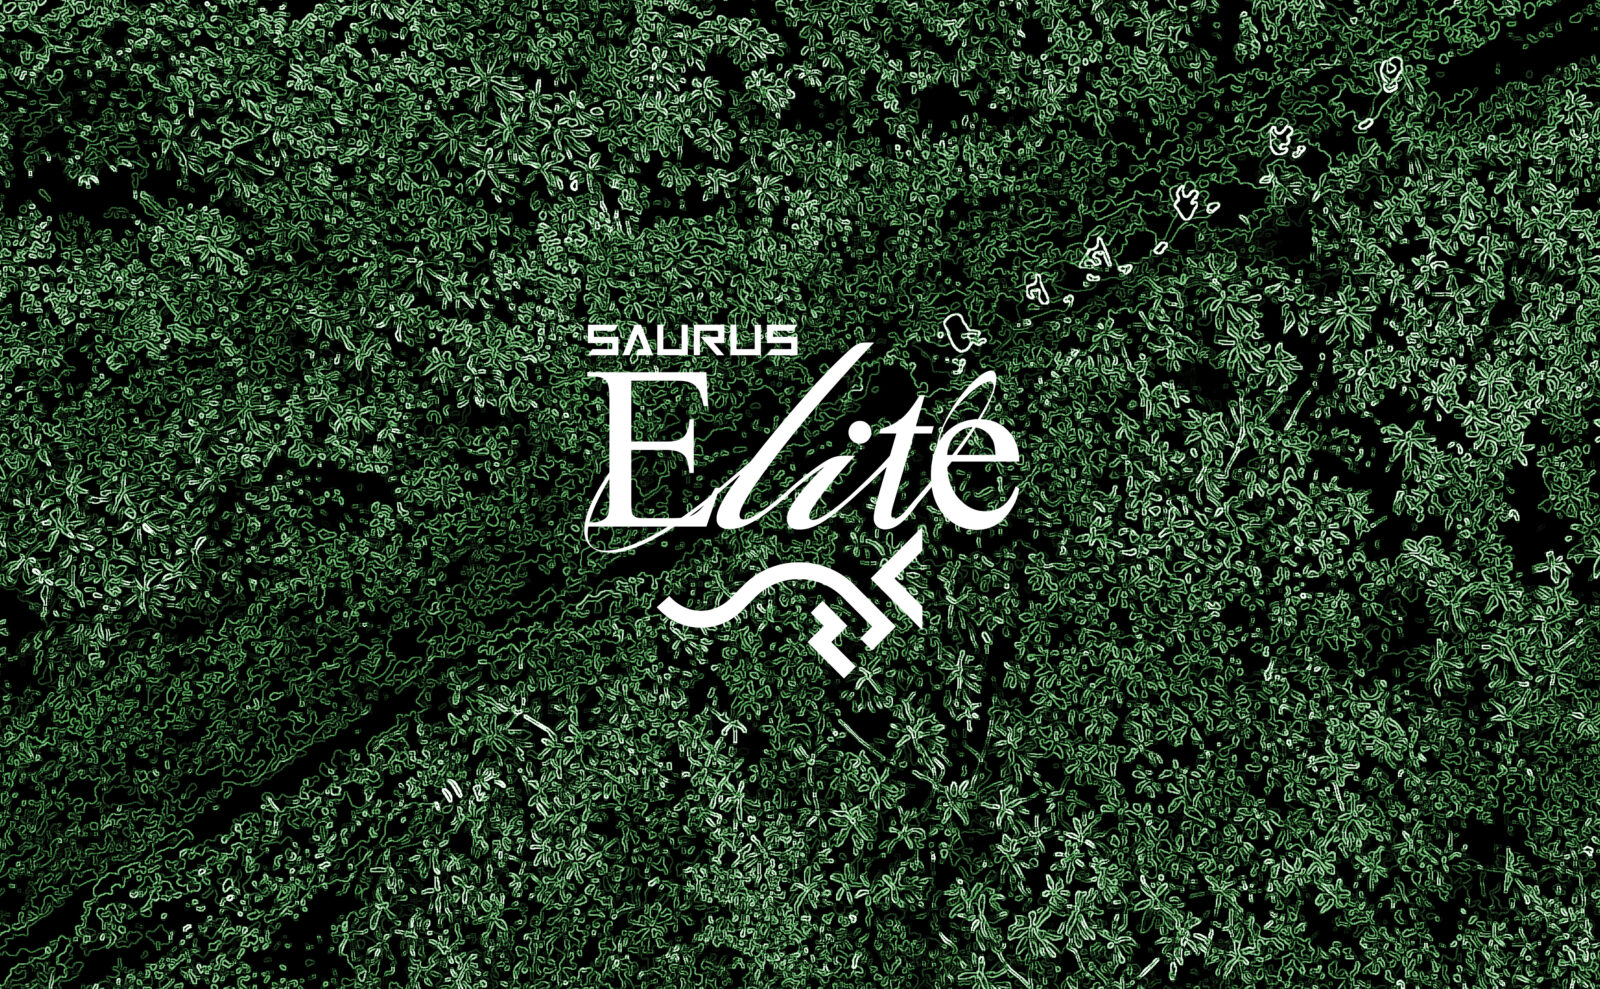 SAURUS_Elite__-11-v2